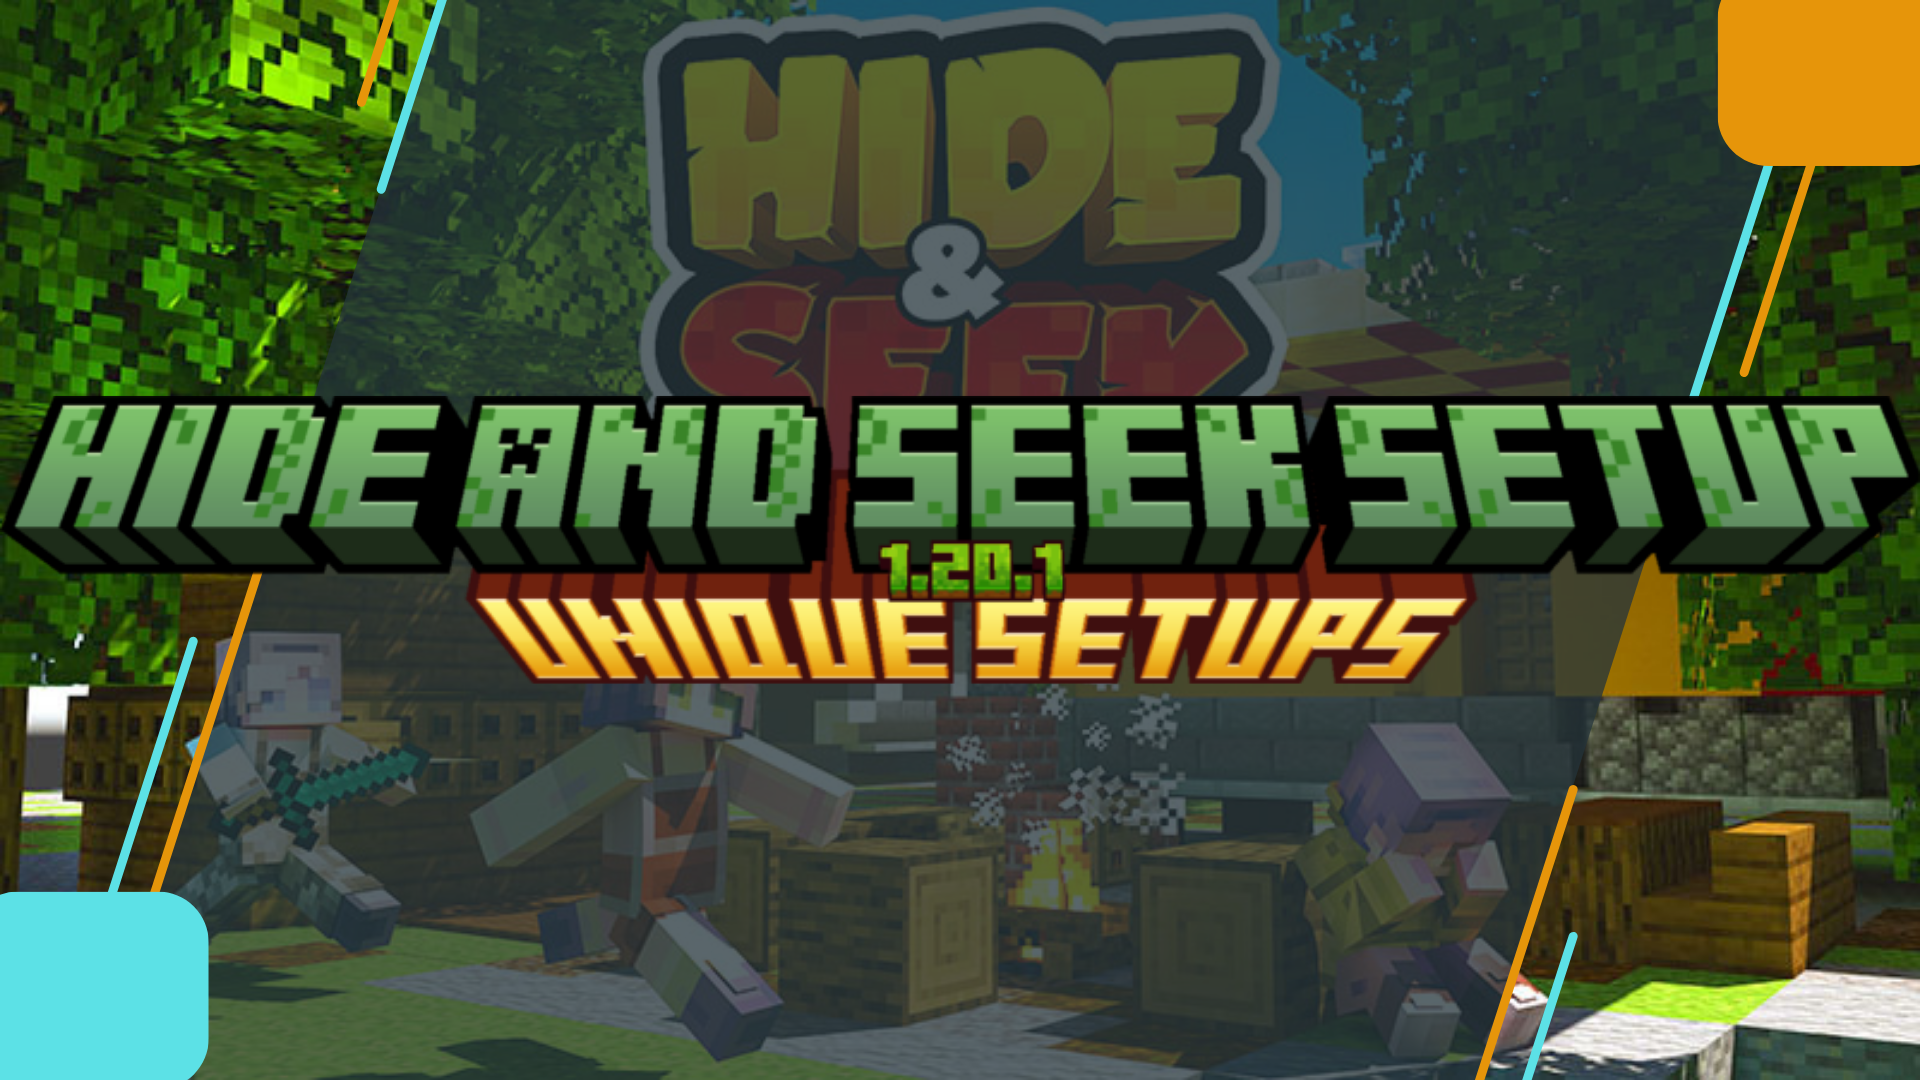 Hive hide & seek